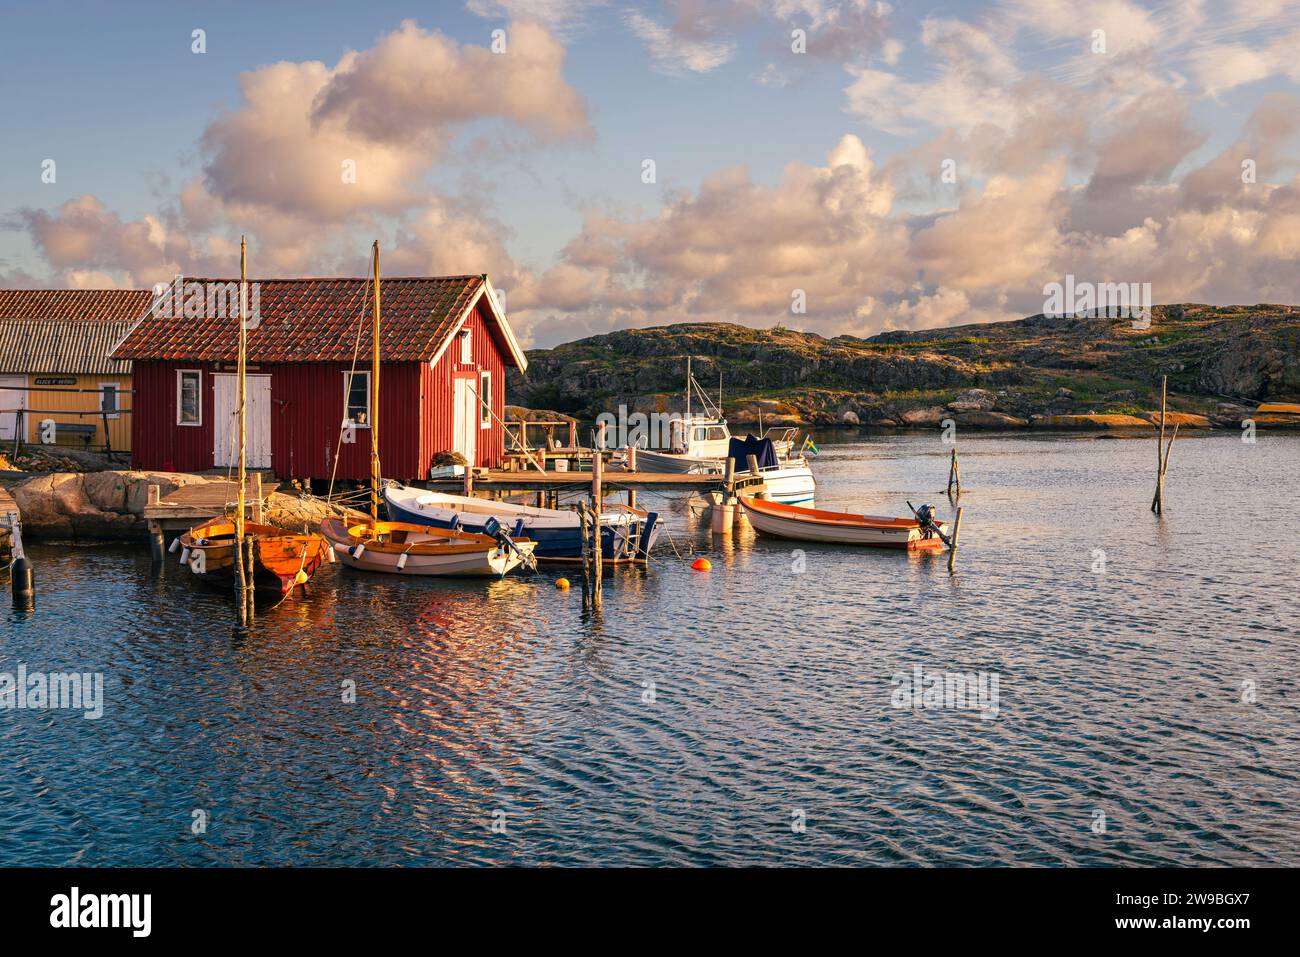 Sorge il sole sulle colorate case di legno nel porto di Björholmen sull'isola di Tjörn, nell'arcipelago della costa occidentale della Svezia Foto Stock